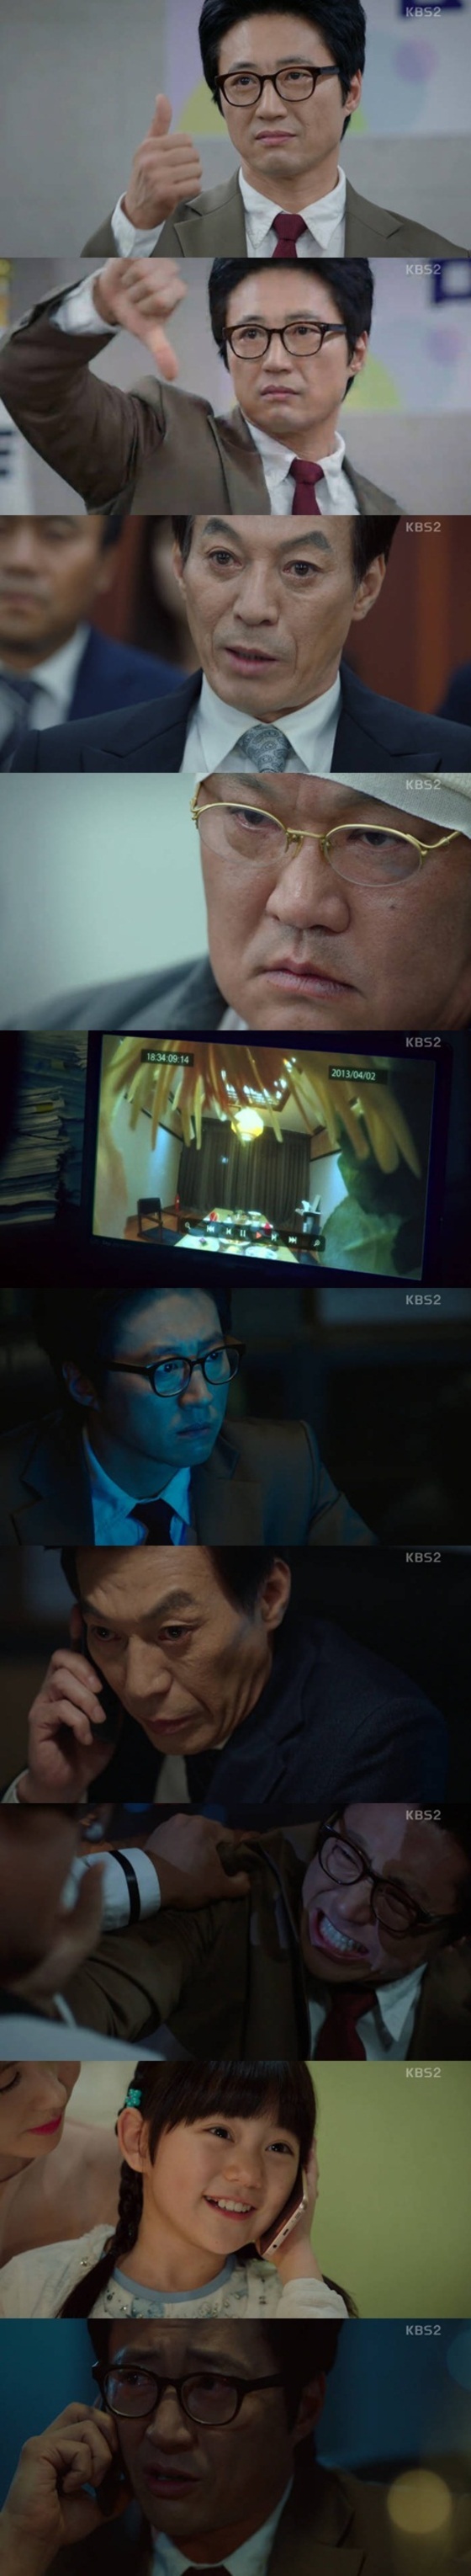 박신양이 김갑수를 잡기 위해 고군분투했다. ⓒNews1star / KBS2 '동네변호사 조들호' 캡처